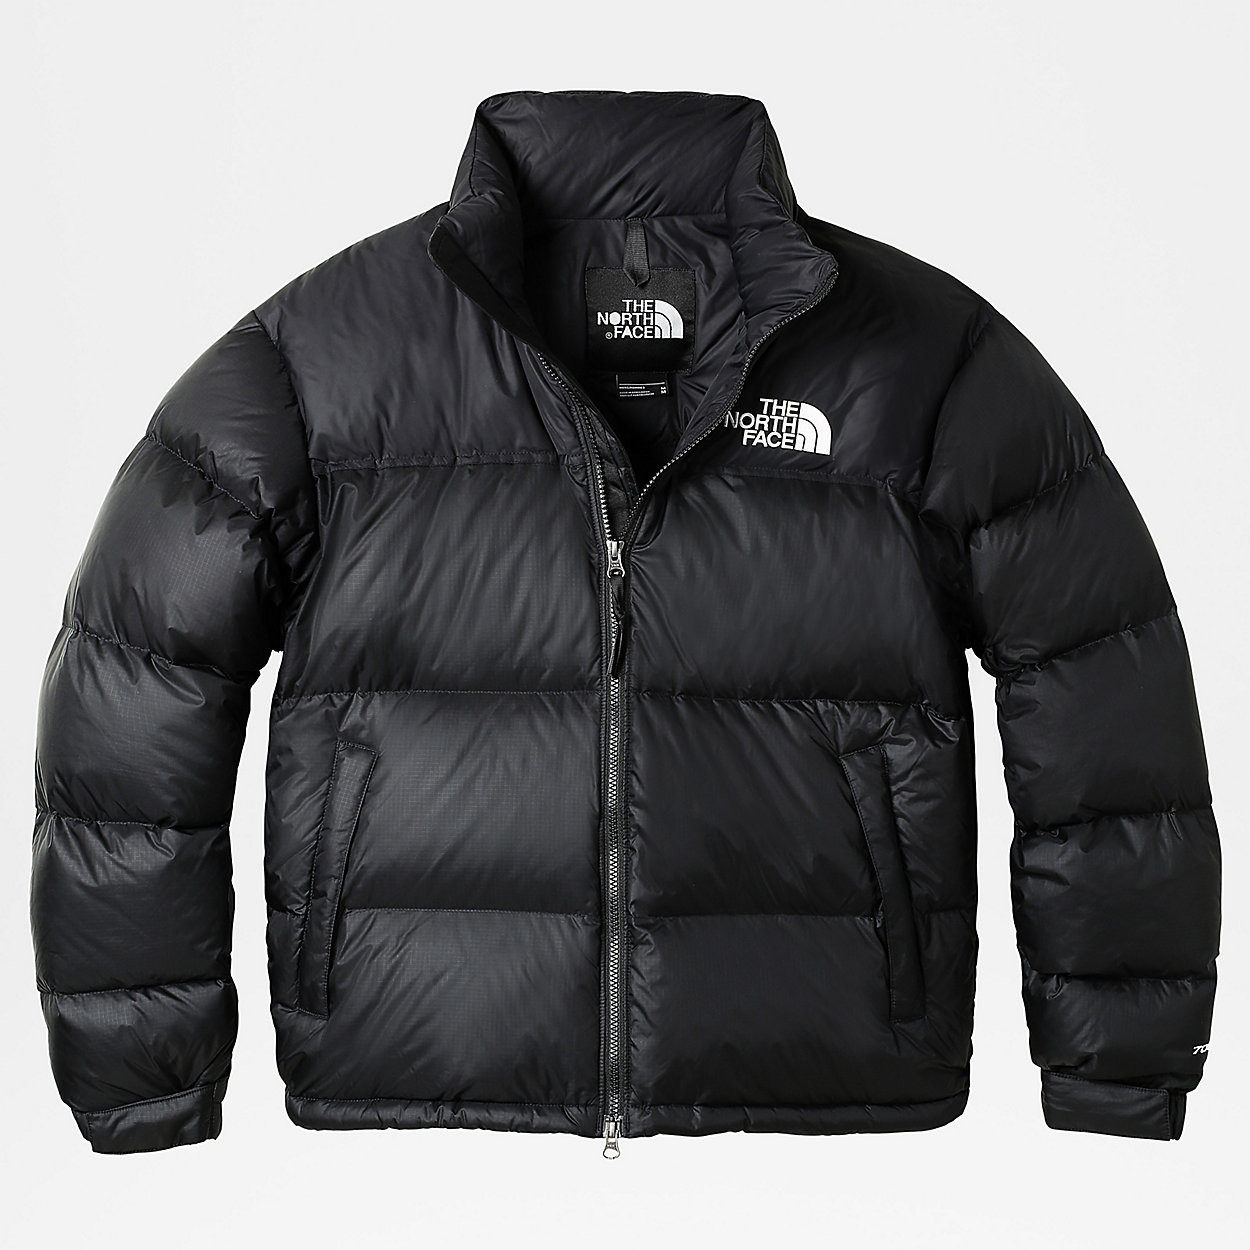 Buy The North Face 1996 Retro Nuptse Jacket tnf black from £299.00 ...